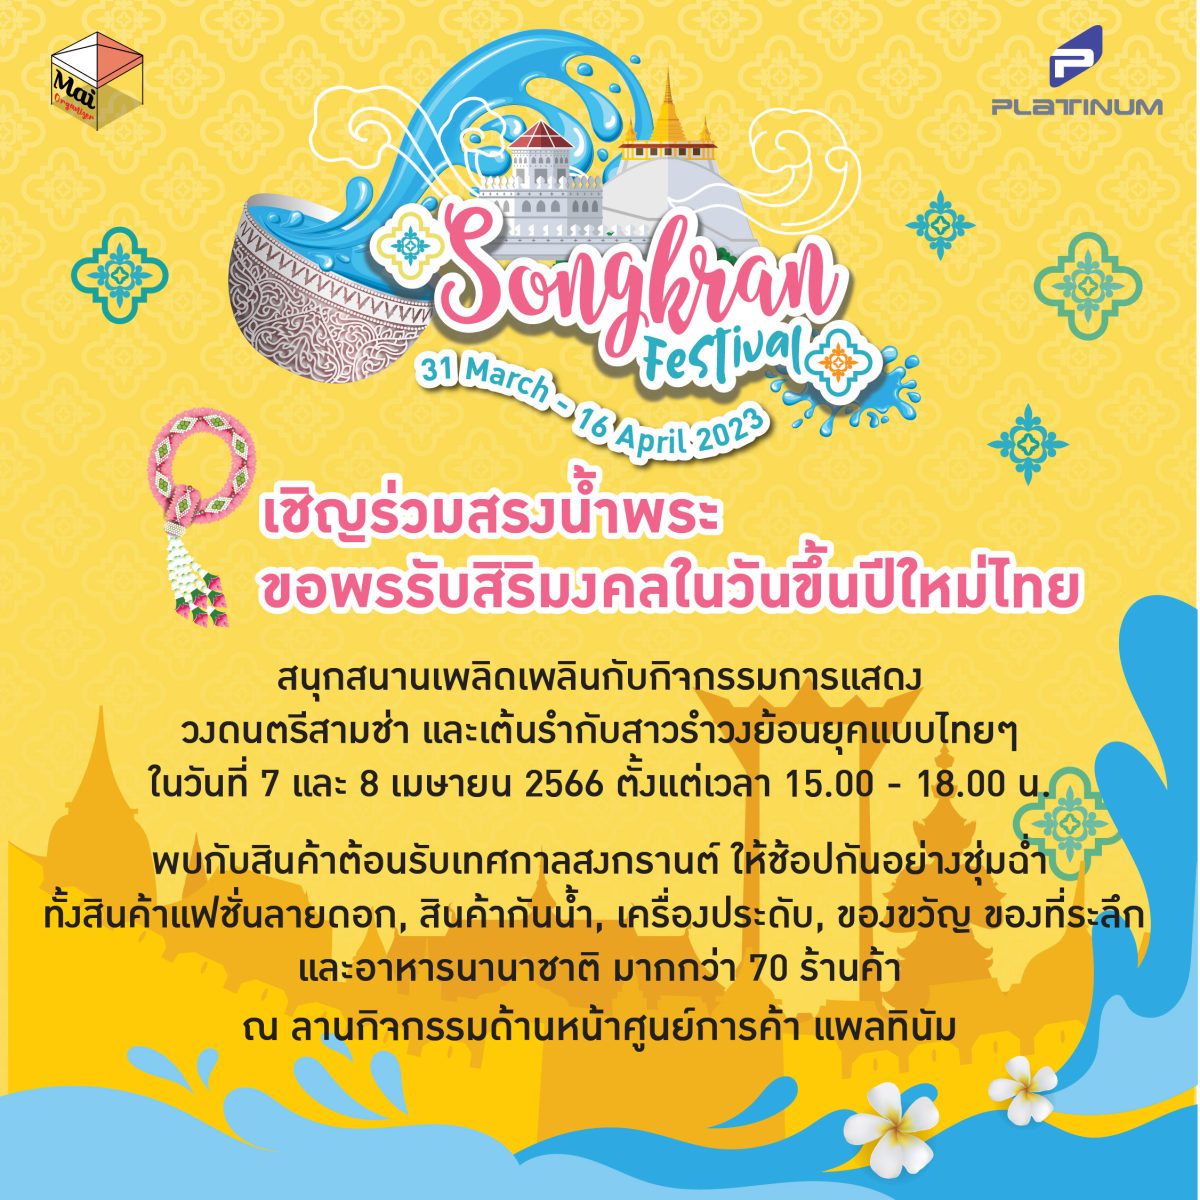 ศูนย์การค้าแพลทินัม ขอเชิญร่วมสรงน้ำพระ ขอพรเสริมสิริมงคล พร้อมช้อปให้ชุ่มฉ่ำใจในงาน Songkran Festival วันนี้ - 16 เม.ย.